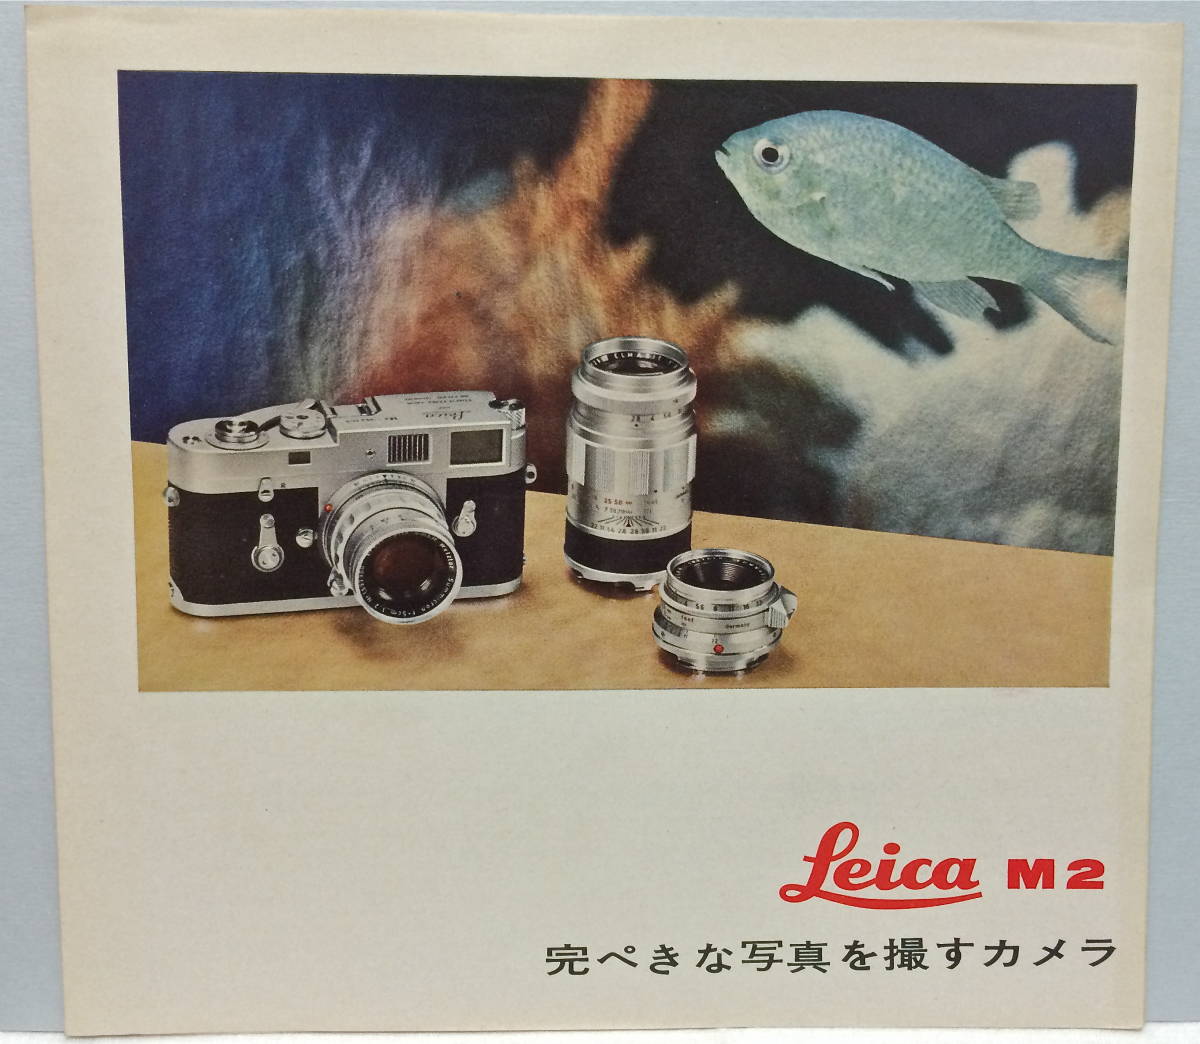 ライカ M2 1963年カタログ 日本語版 三開き裏表 シュミット制作_画像1